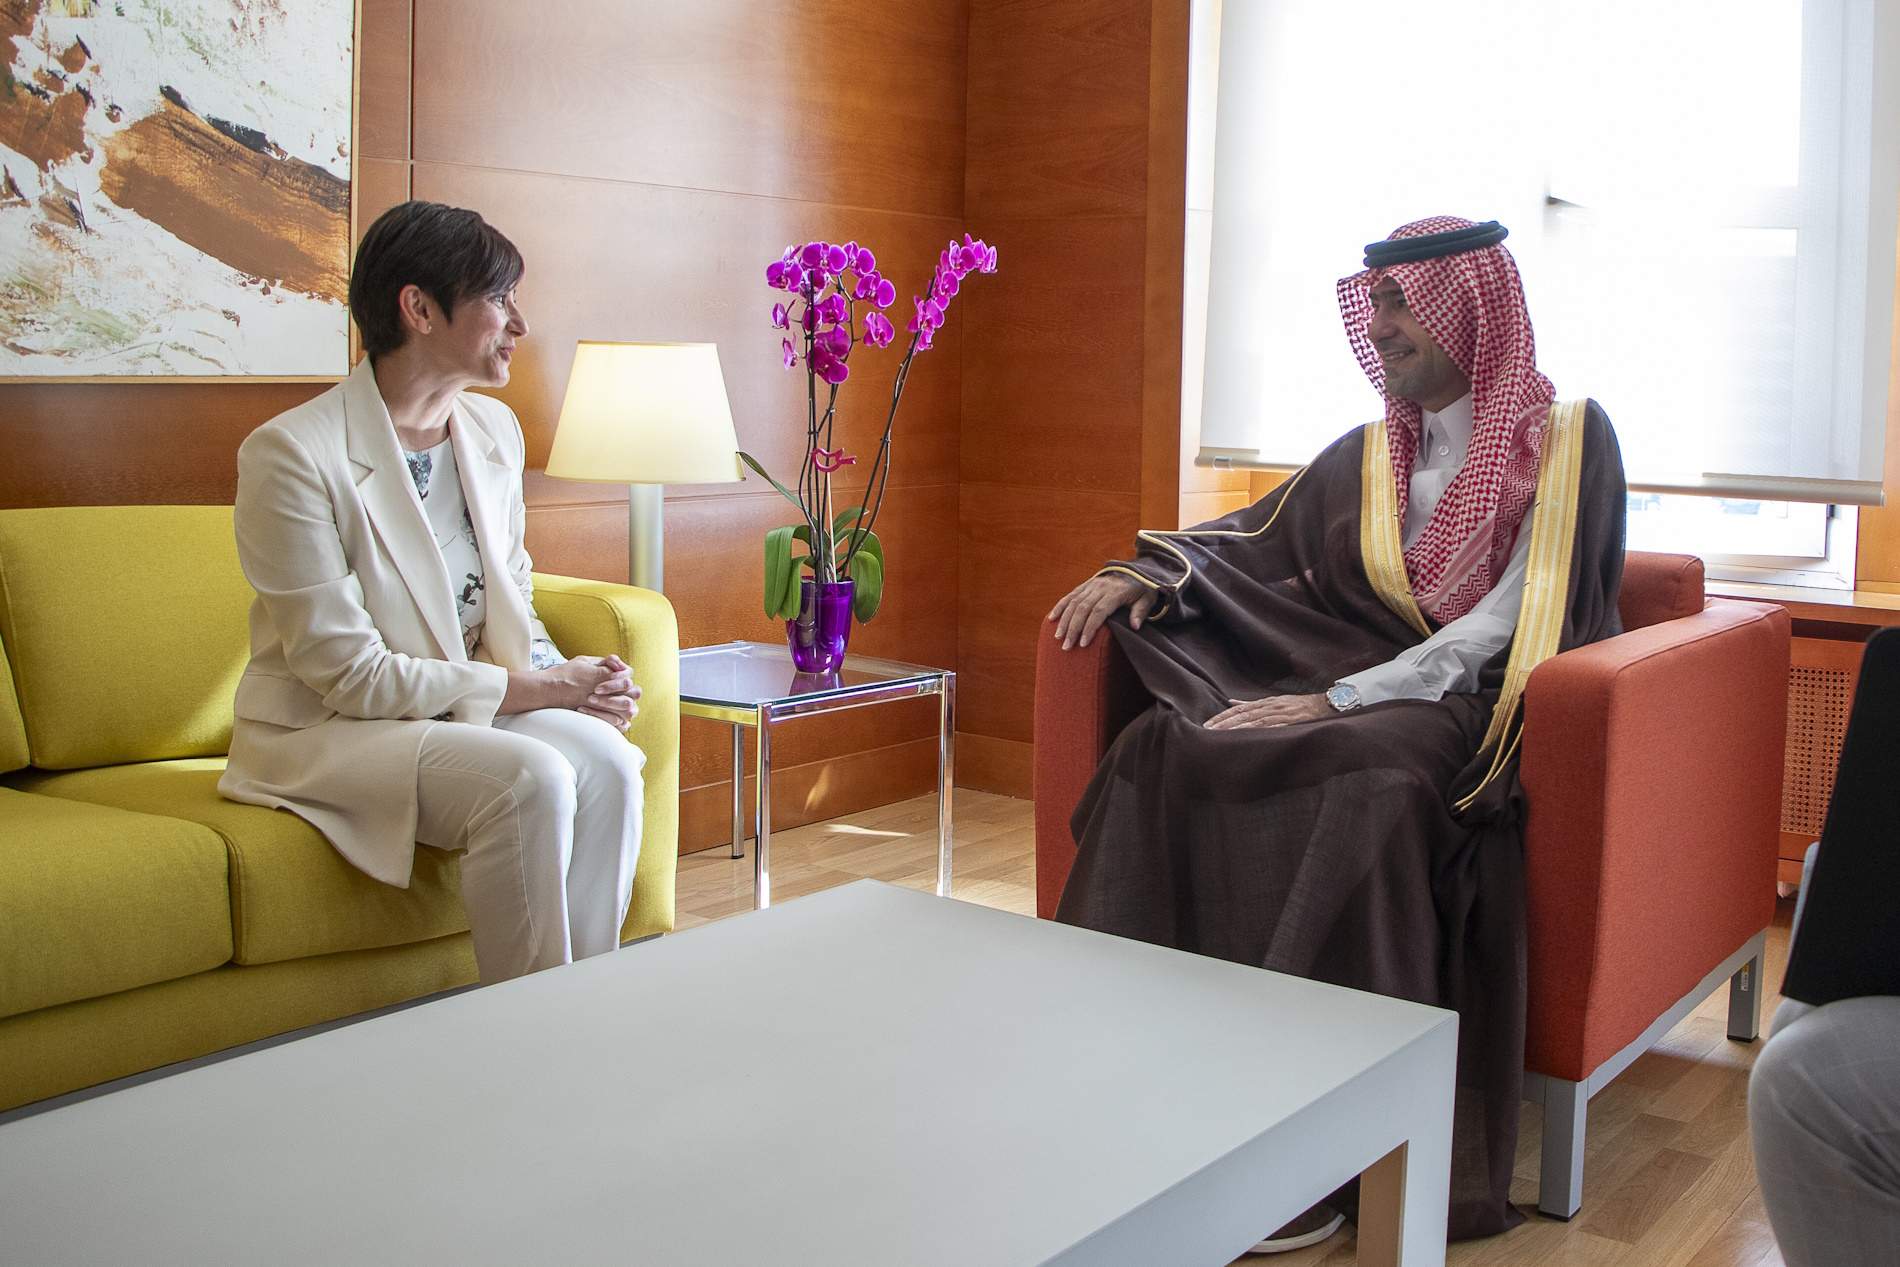 La ministra de Vivienda considera a Arabia Saudí un socio económico de vital importancia para España